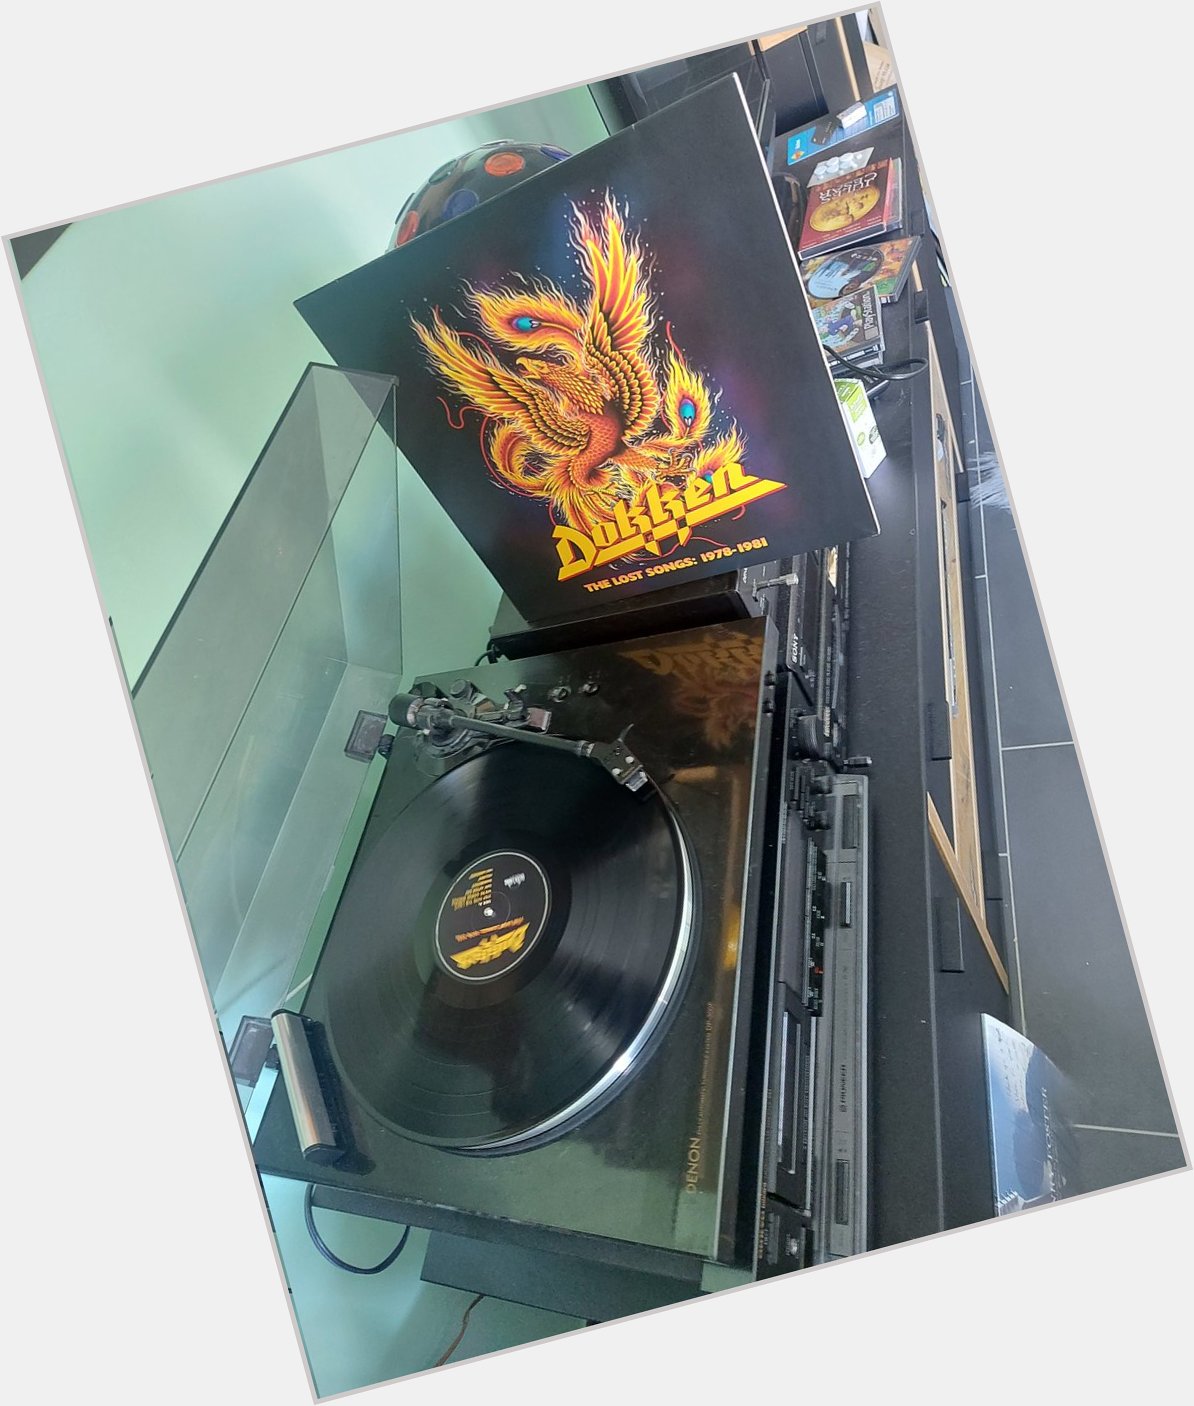 Happy Birthday Don Dokken *69*!
Dokken - The Lost Songs 1978 - 1981
(Silverline Music/2020) 